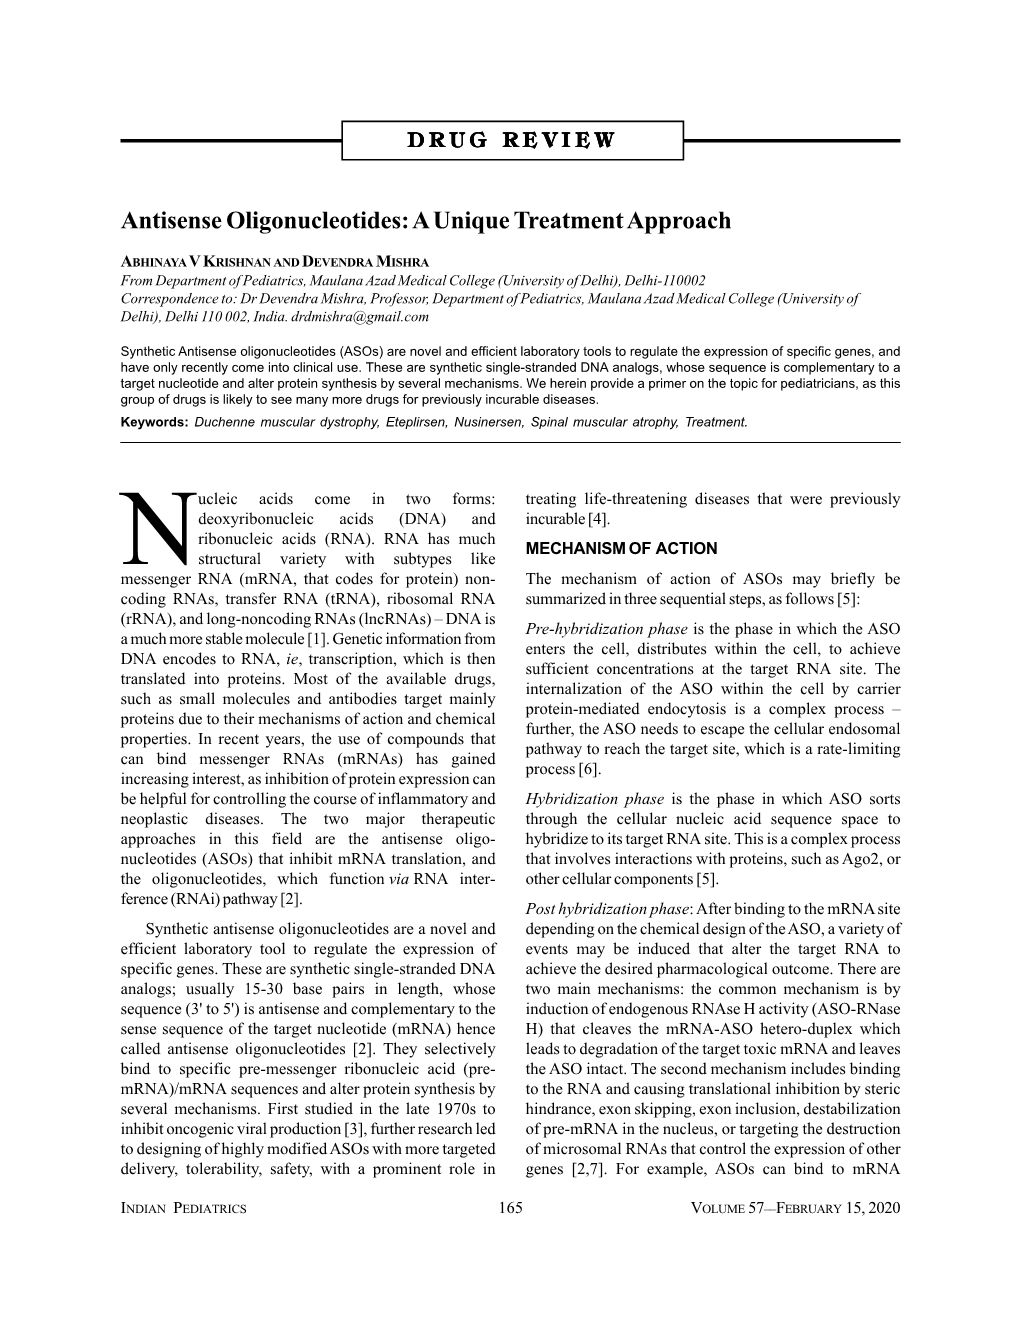 Antisense Oligonucleotides: a Unique Treatment Approach